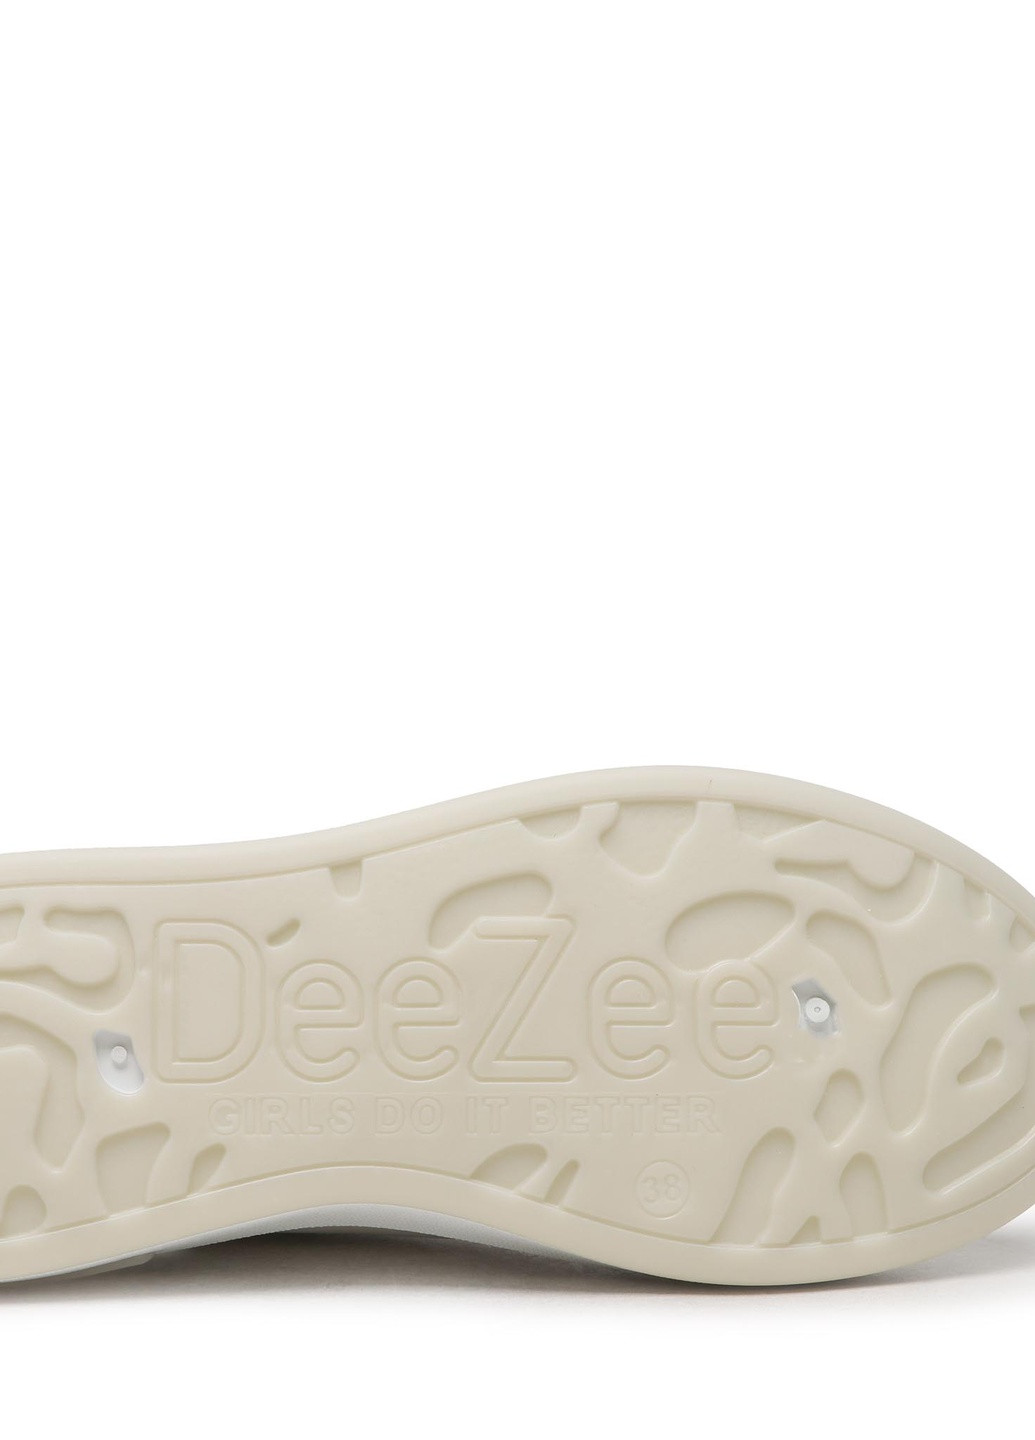 Снікерcи TS5126-01 DeeZee однотонні білі кежуали